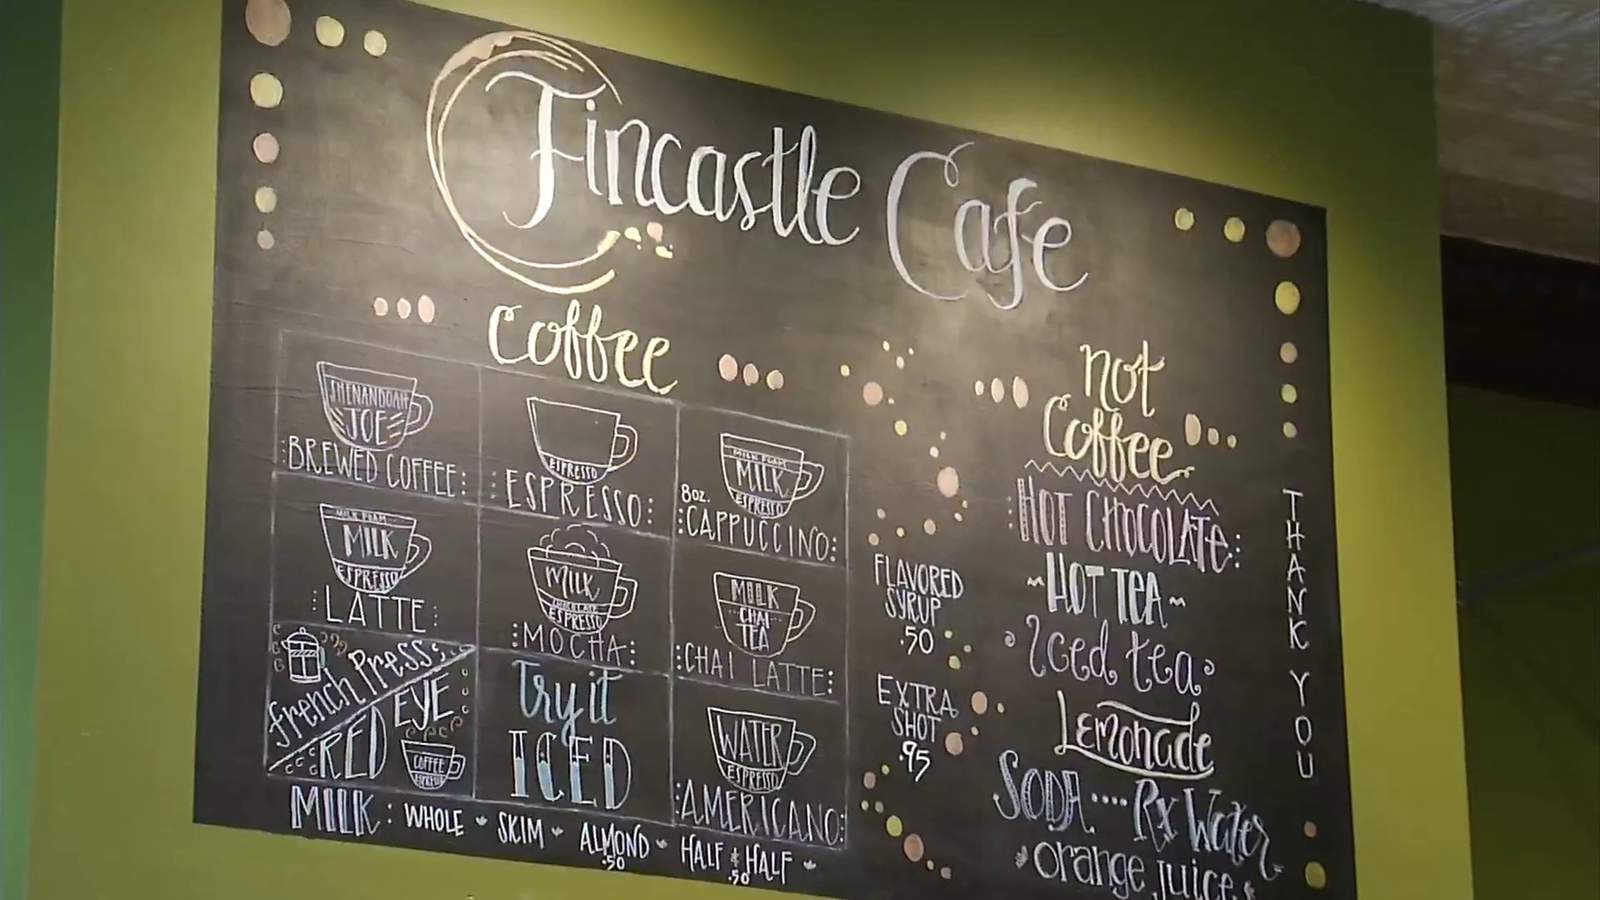 Tasty Tuesday: Fincastle Cafe